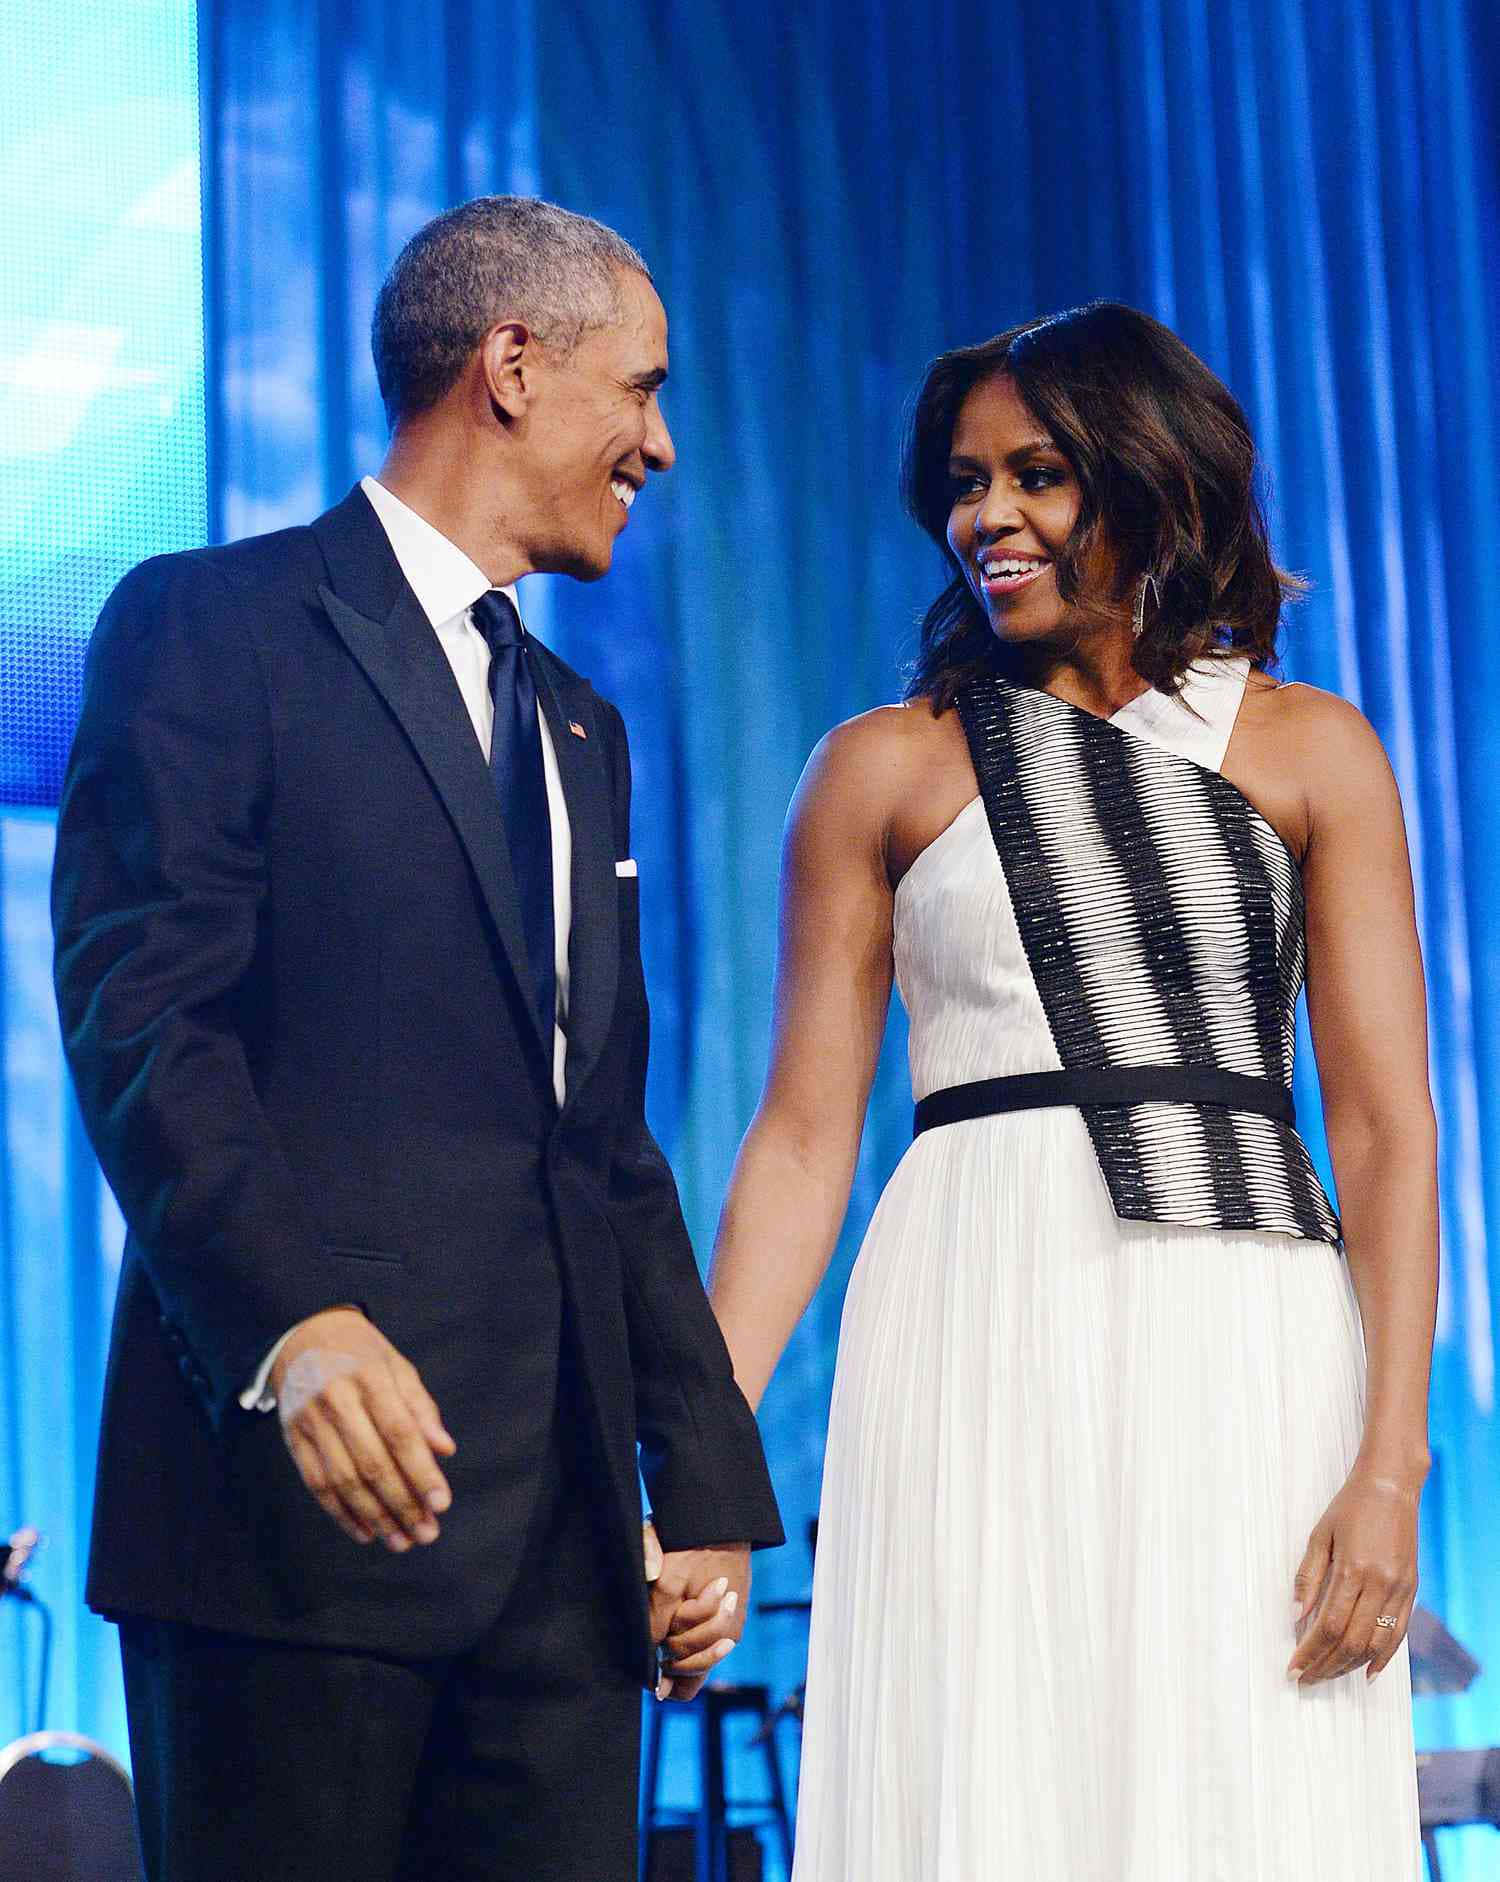 Paarbild Von Barack Obama Und Michelle